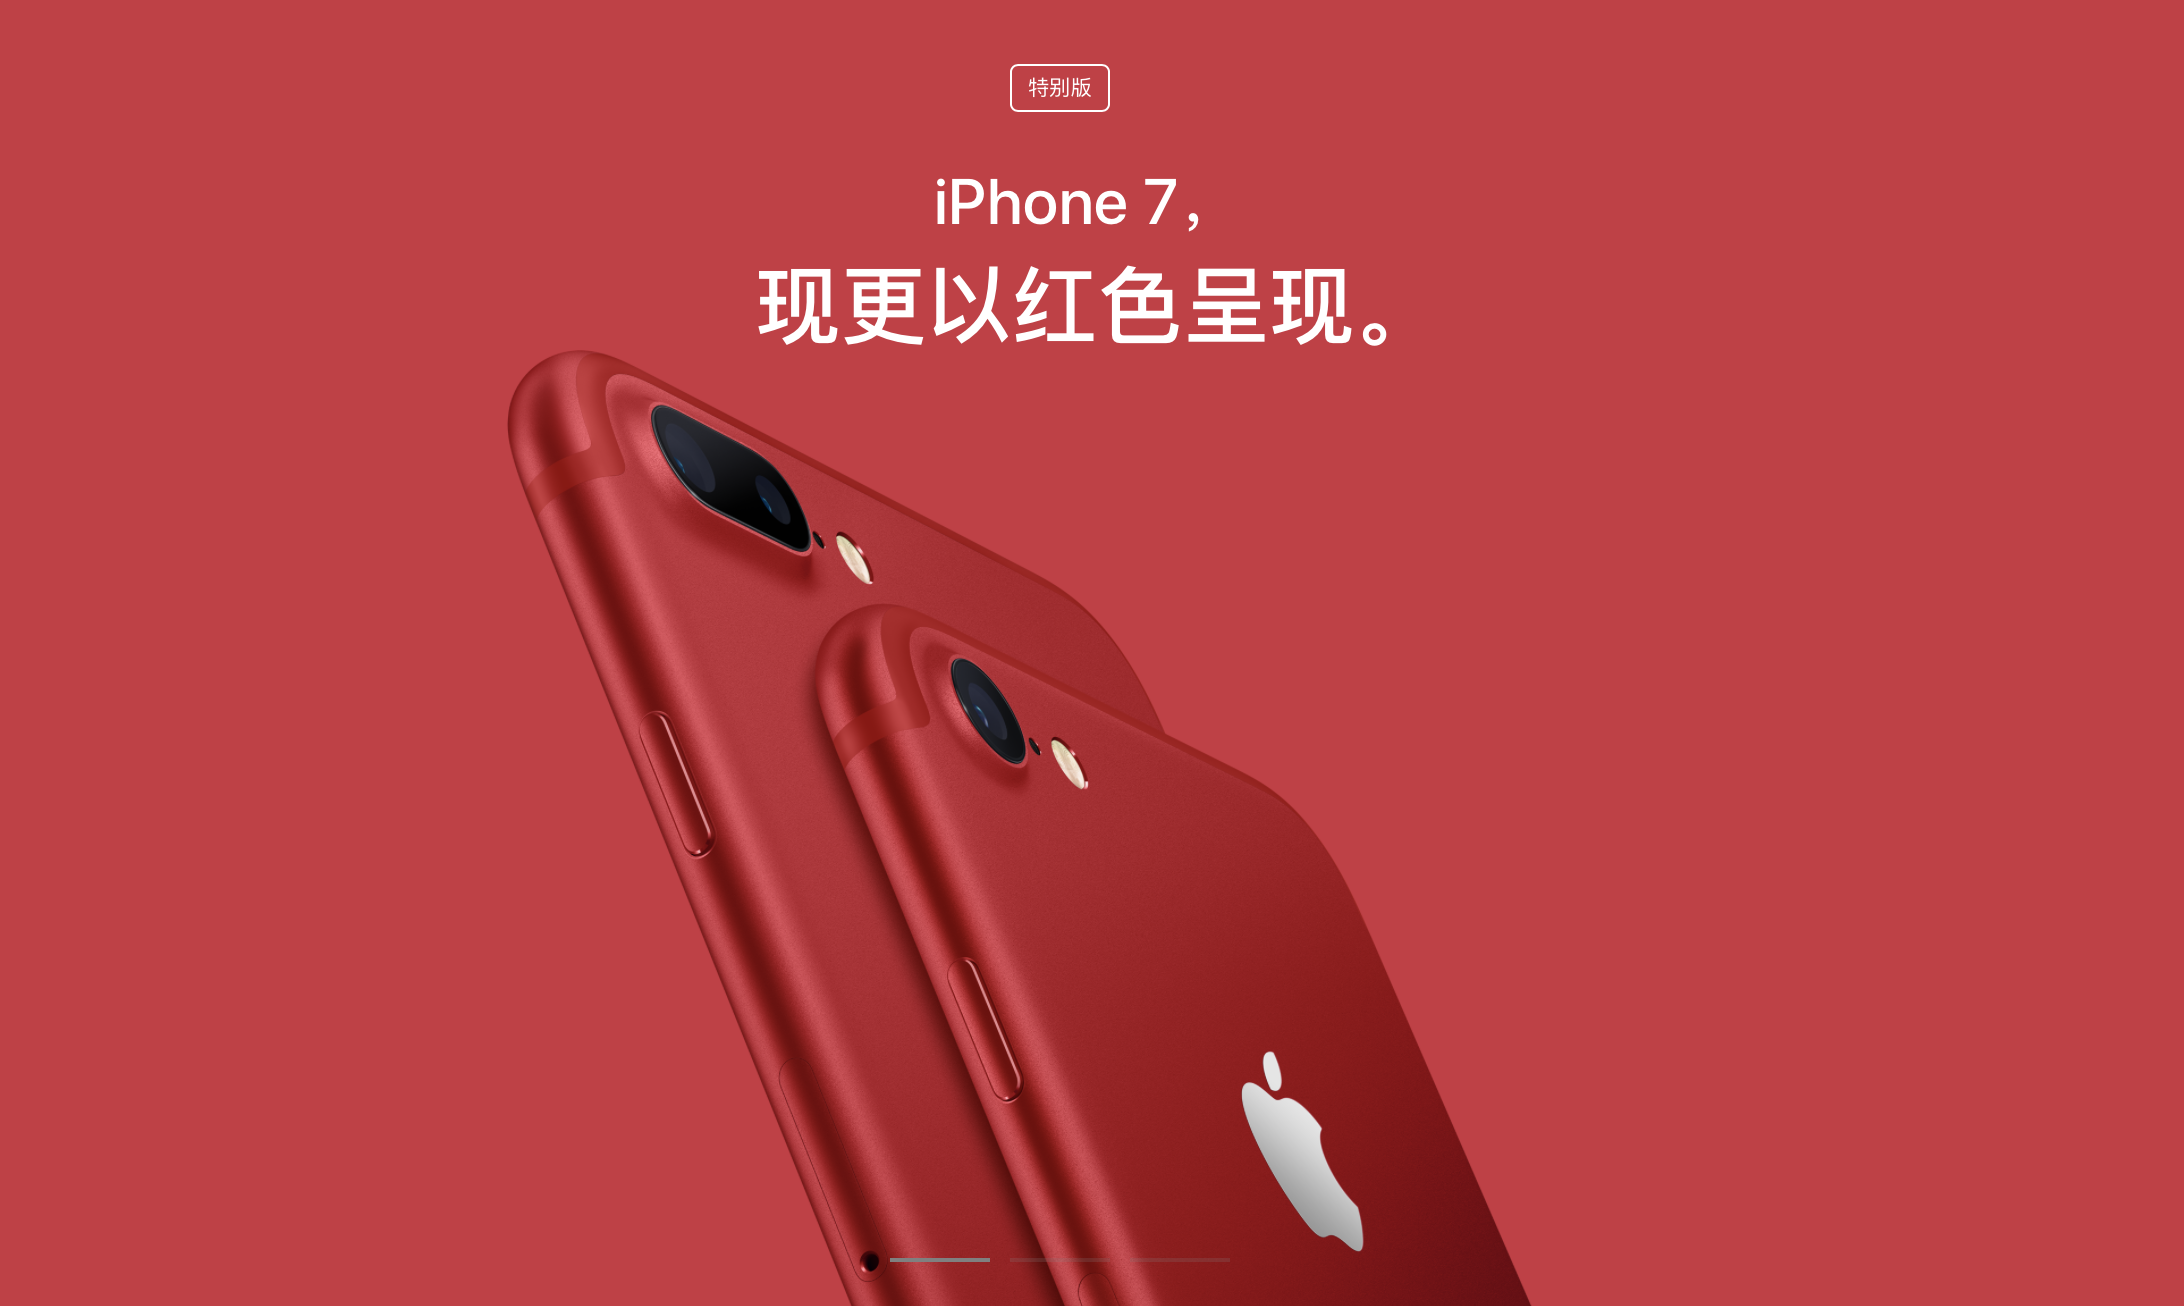 紅色 iPhone 7 (PRODUCT)RED 在中國的商店裡，有不一樣的名字